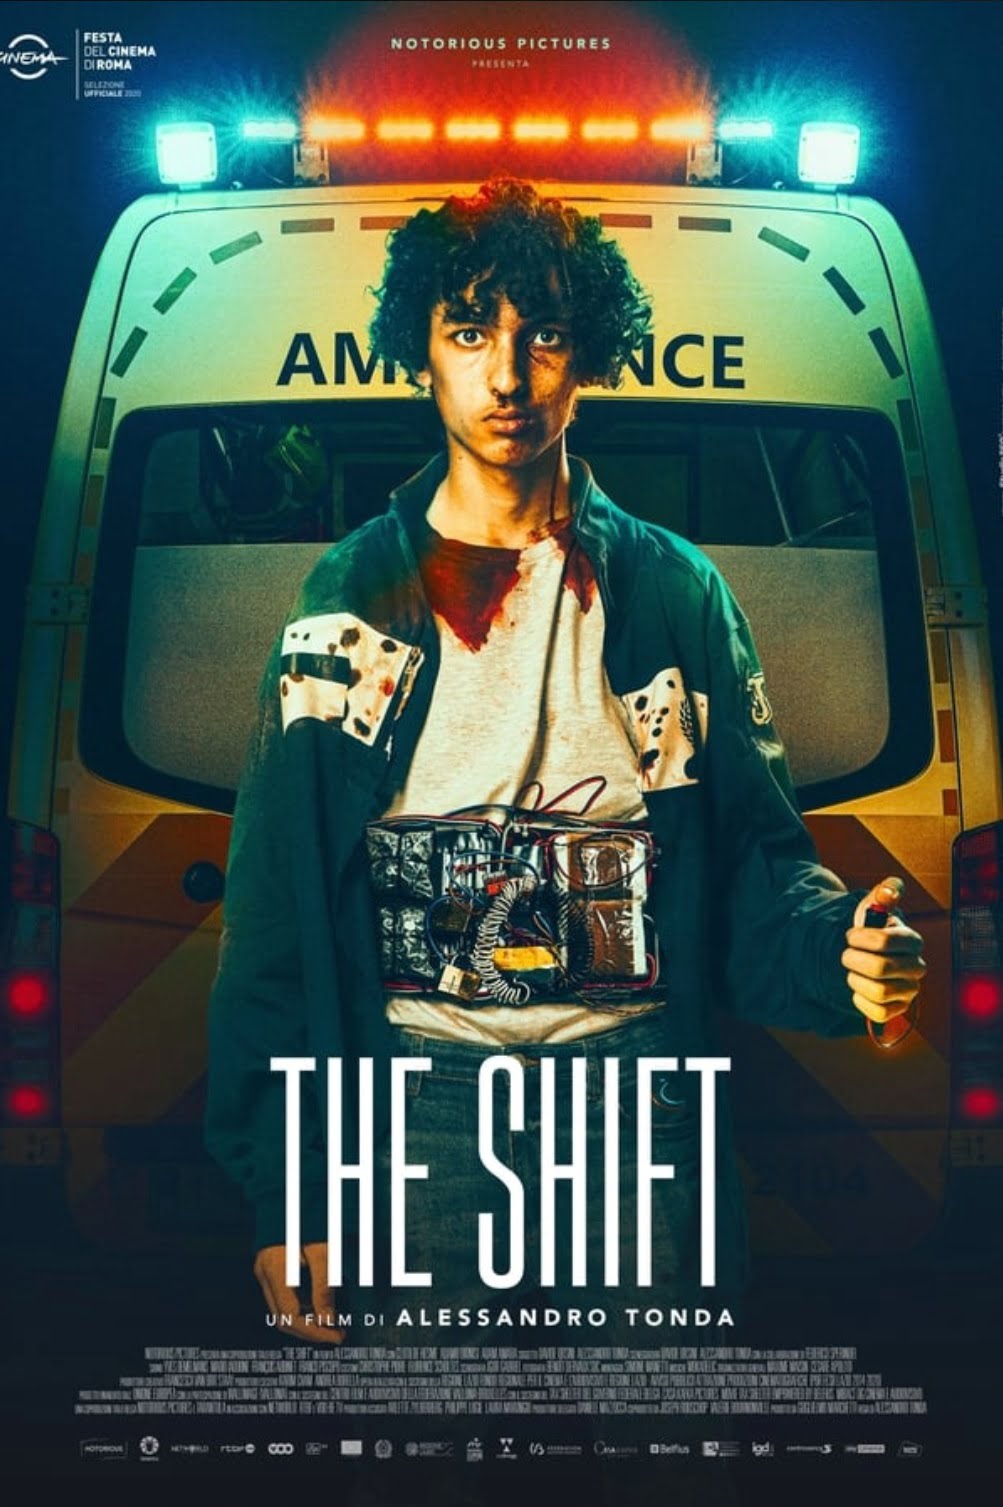 Plakát pro film “The Shift”